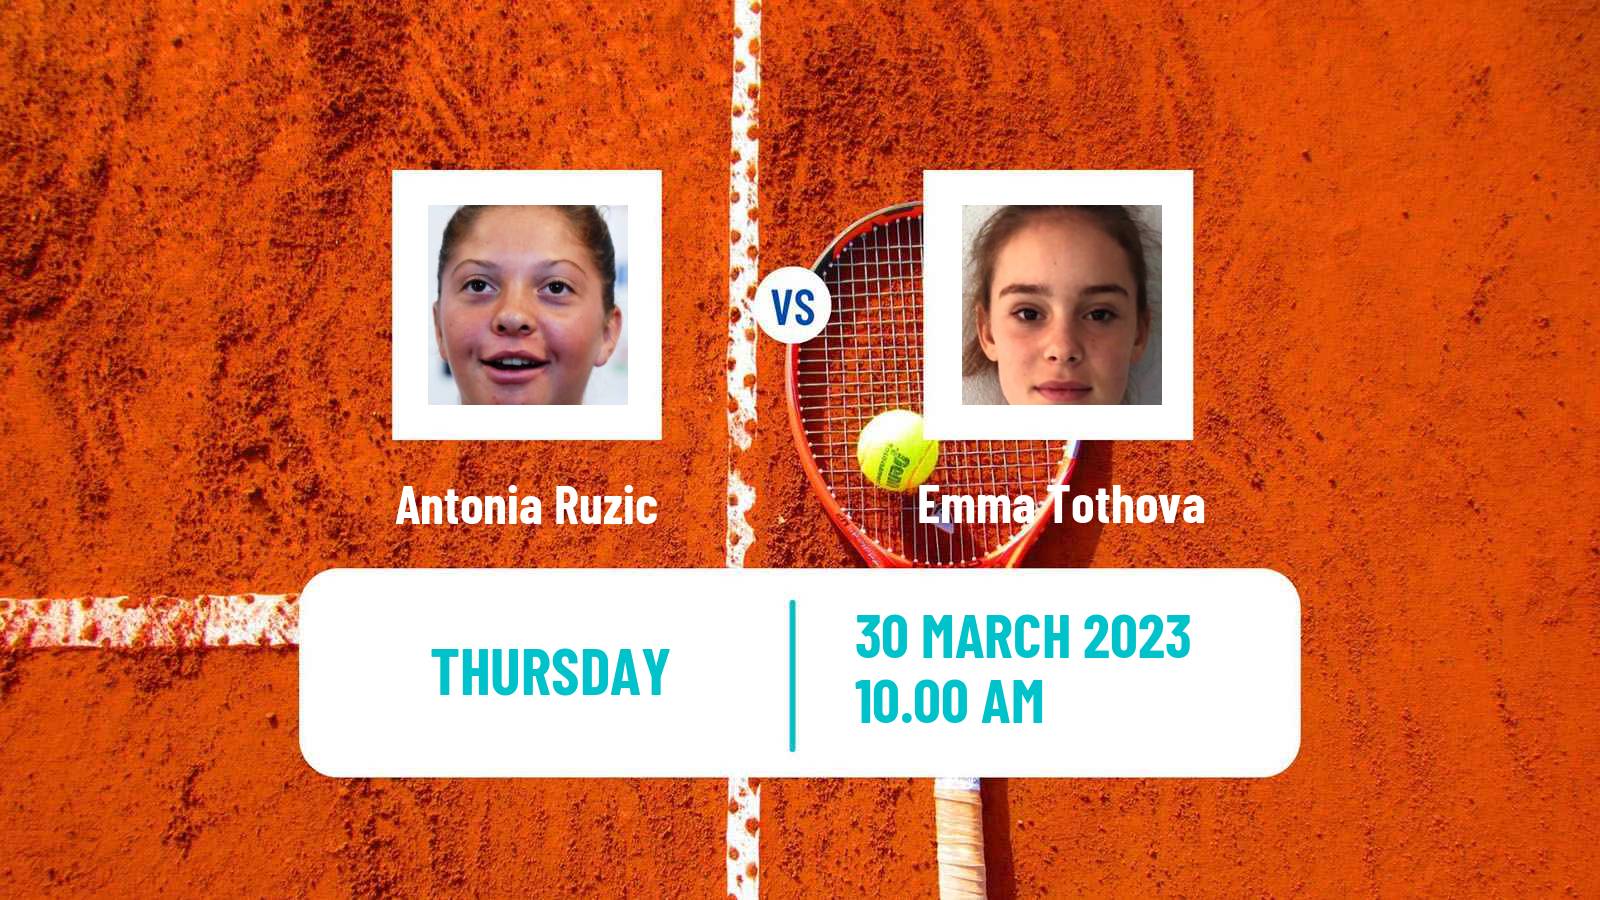 Tennis ITF Tournaments Antonia Ruzic - Emma Tothova